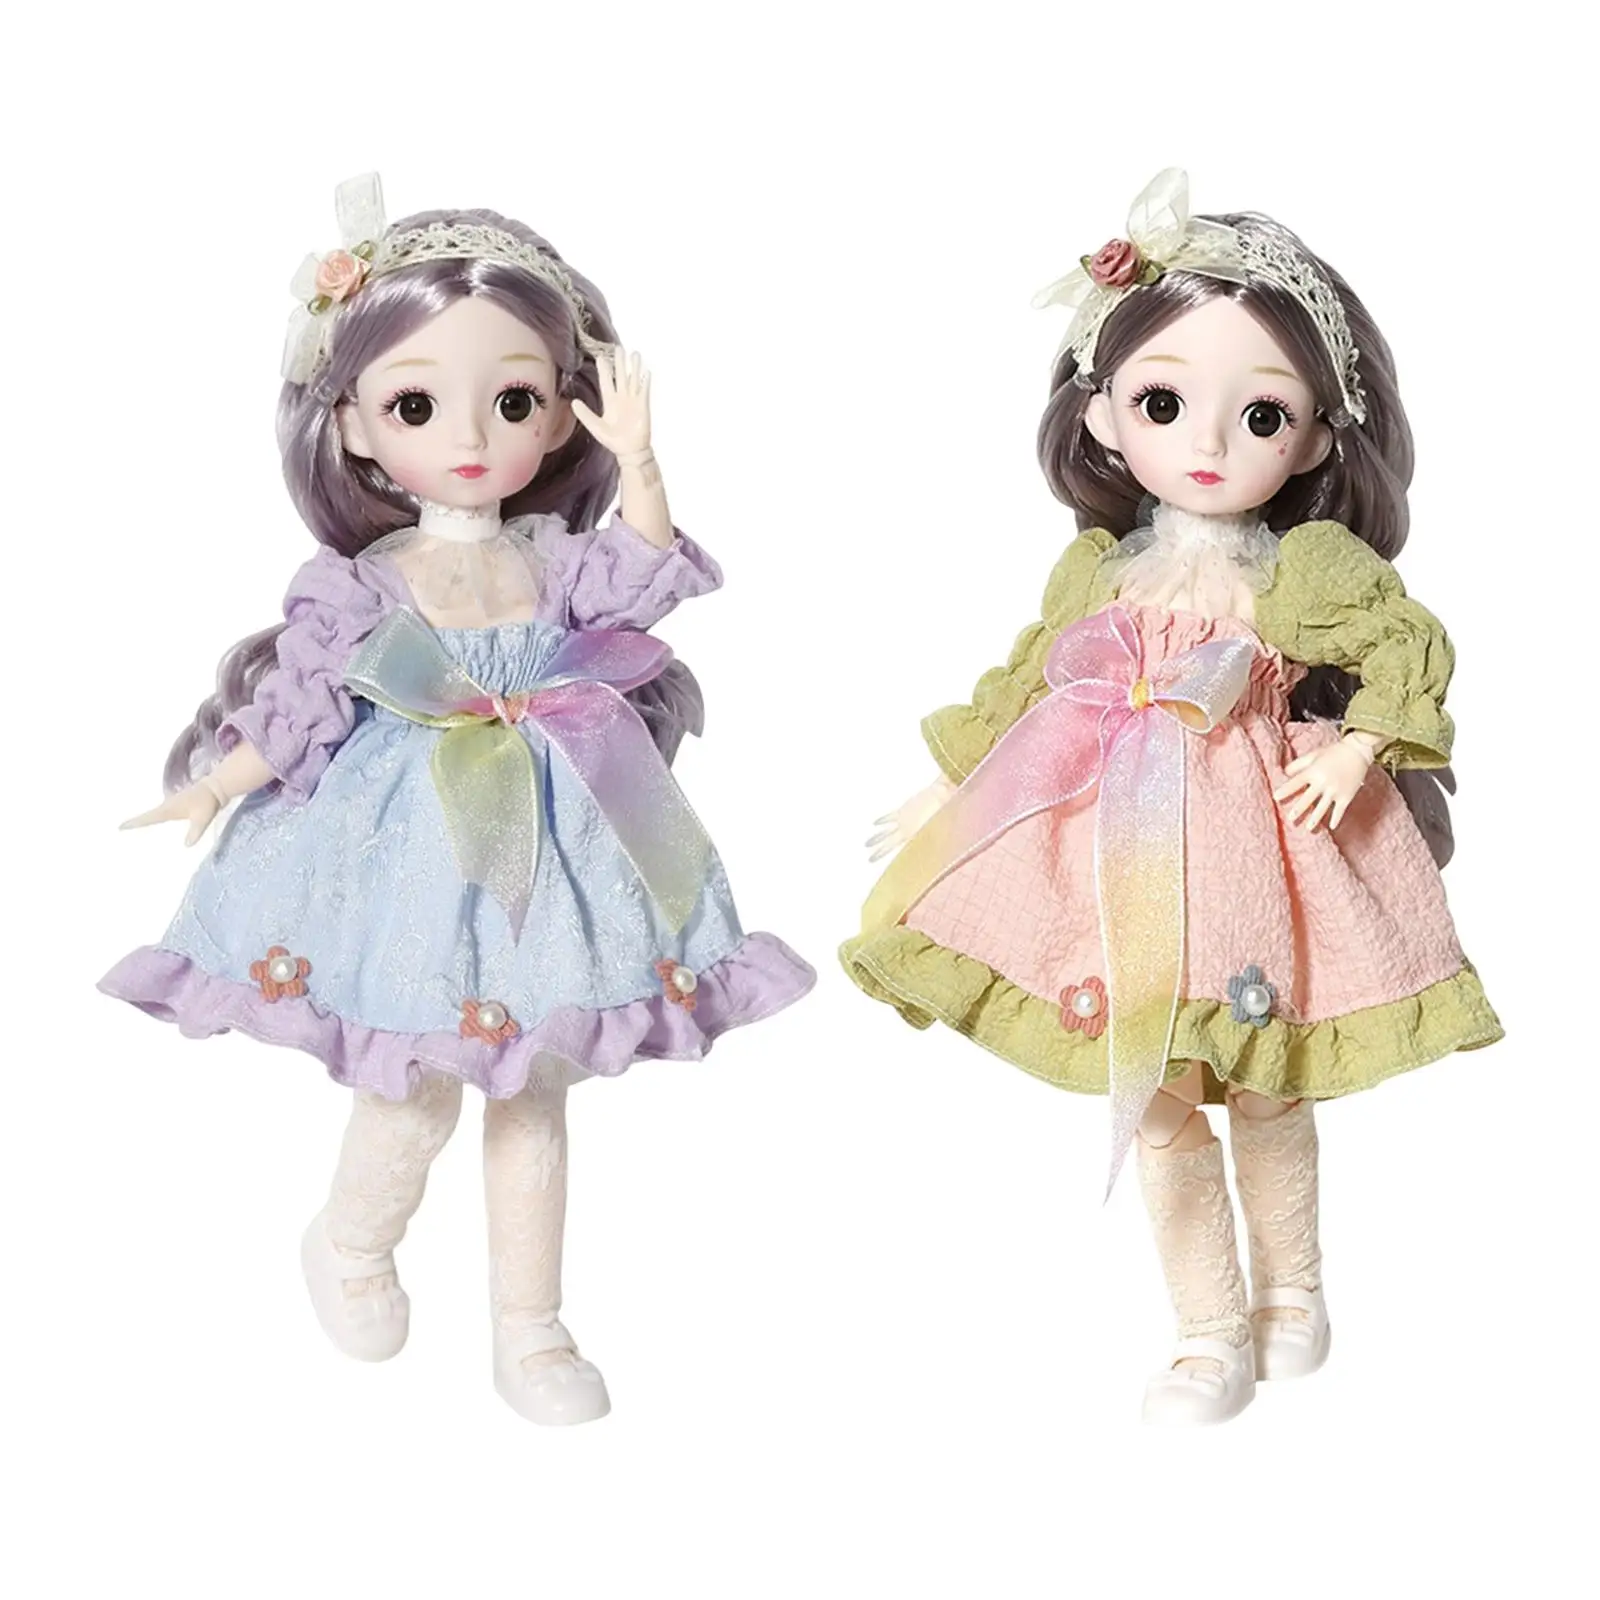 Купить куклы и аксессуары в интернет магазине азинский.рф